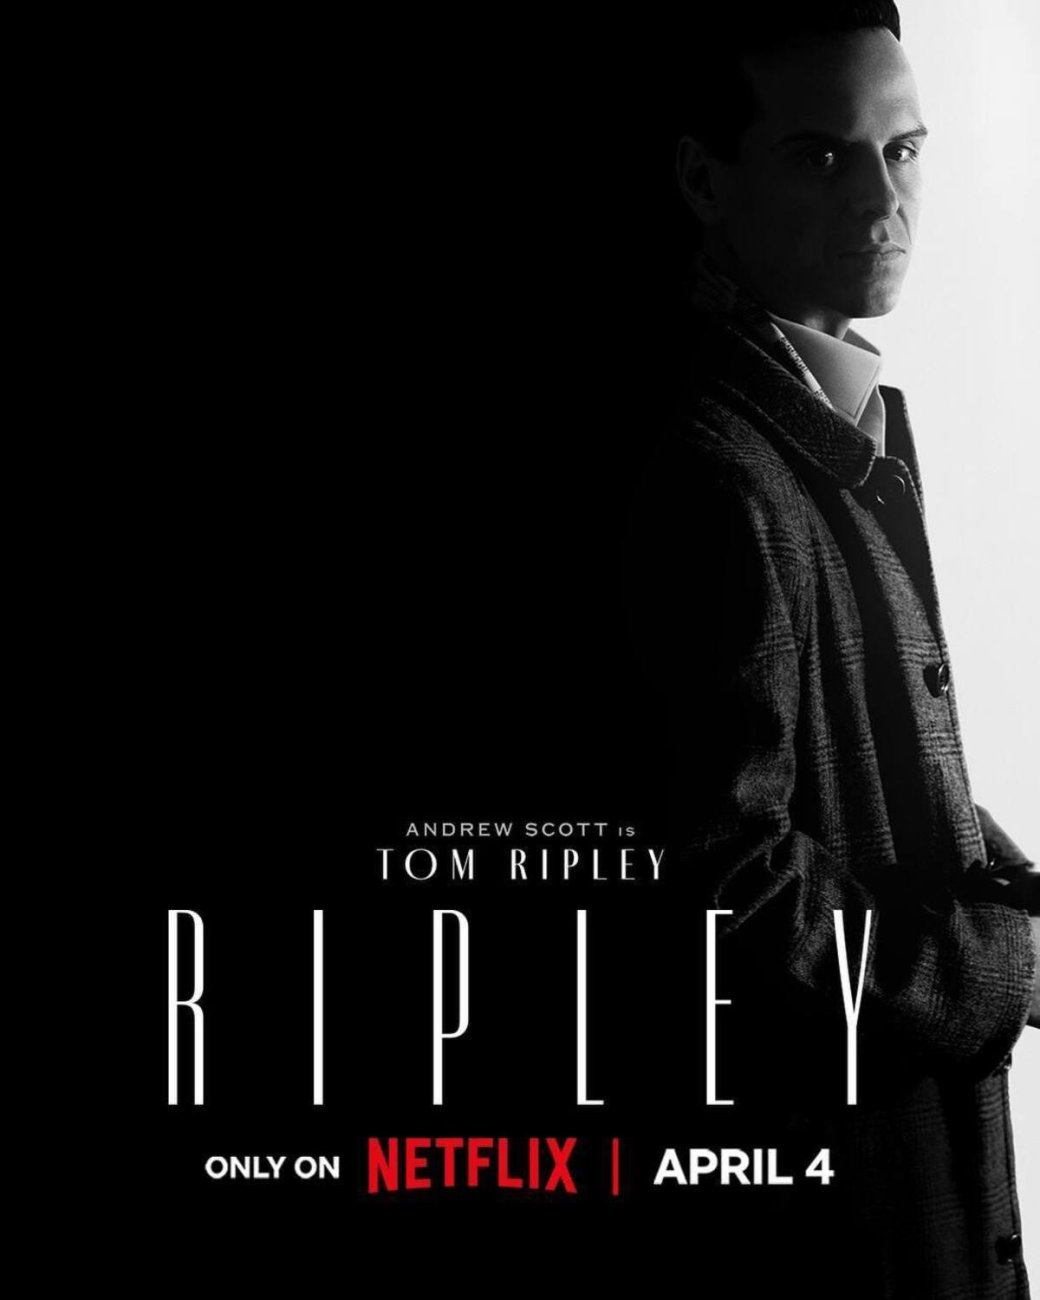 Галерея Netflix опубликовала персонажные постеры сериала «Рипли» - 5 фото